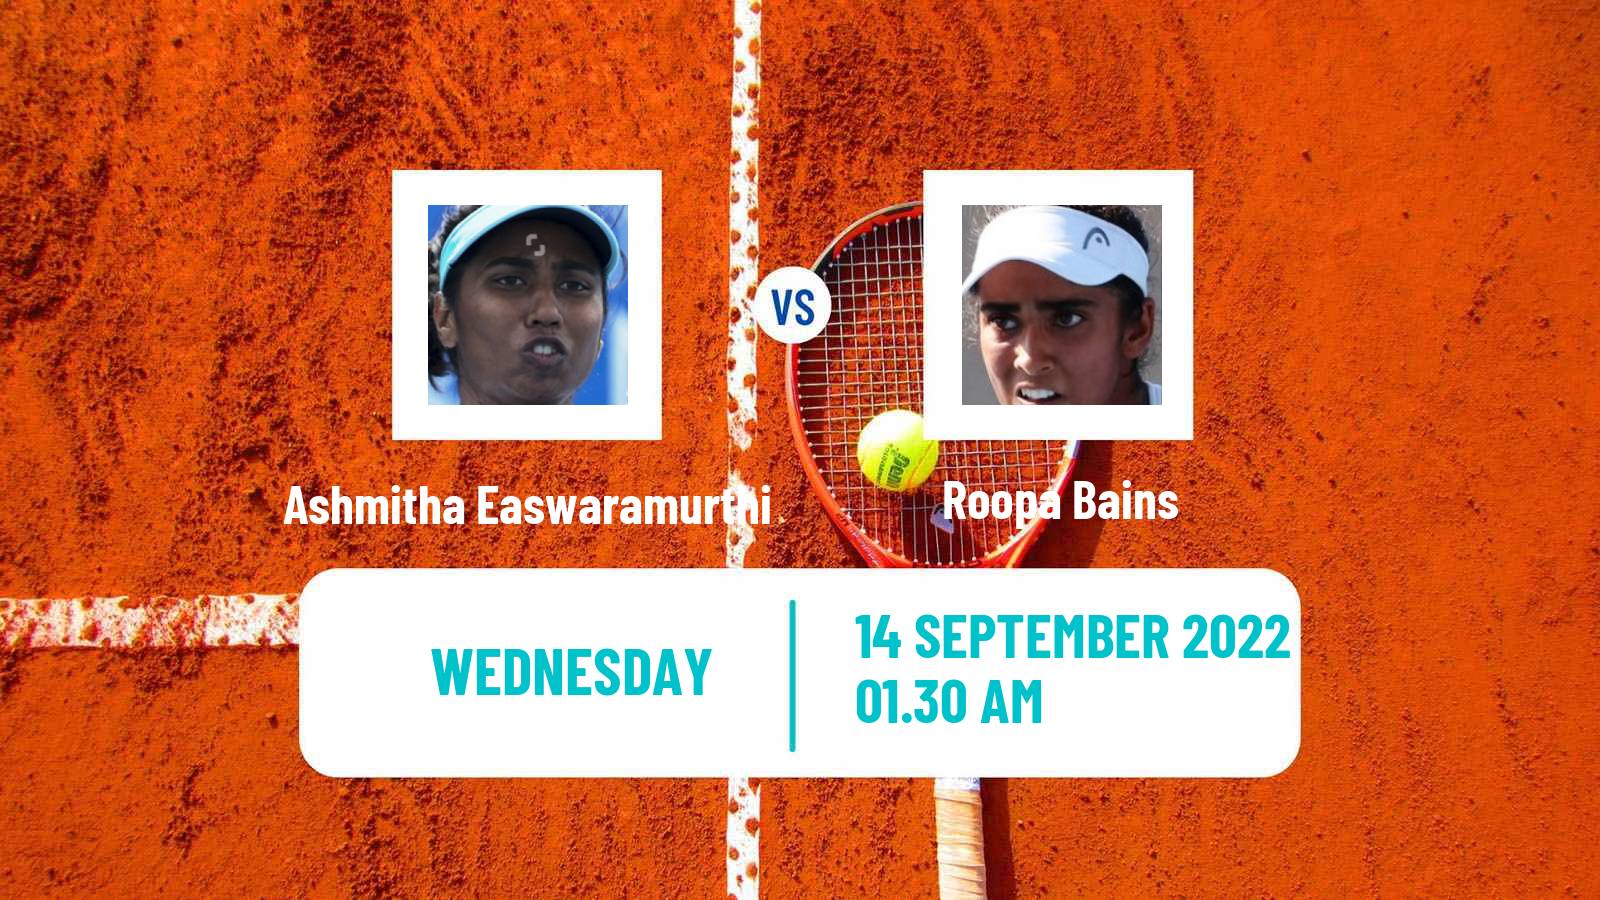 Tennis ITF Tournaments Ashmitha Easwaramurthi - Roopa Bains